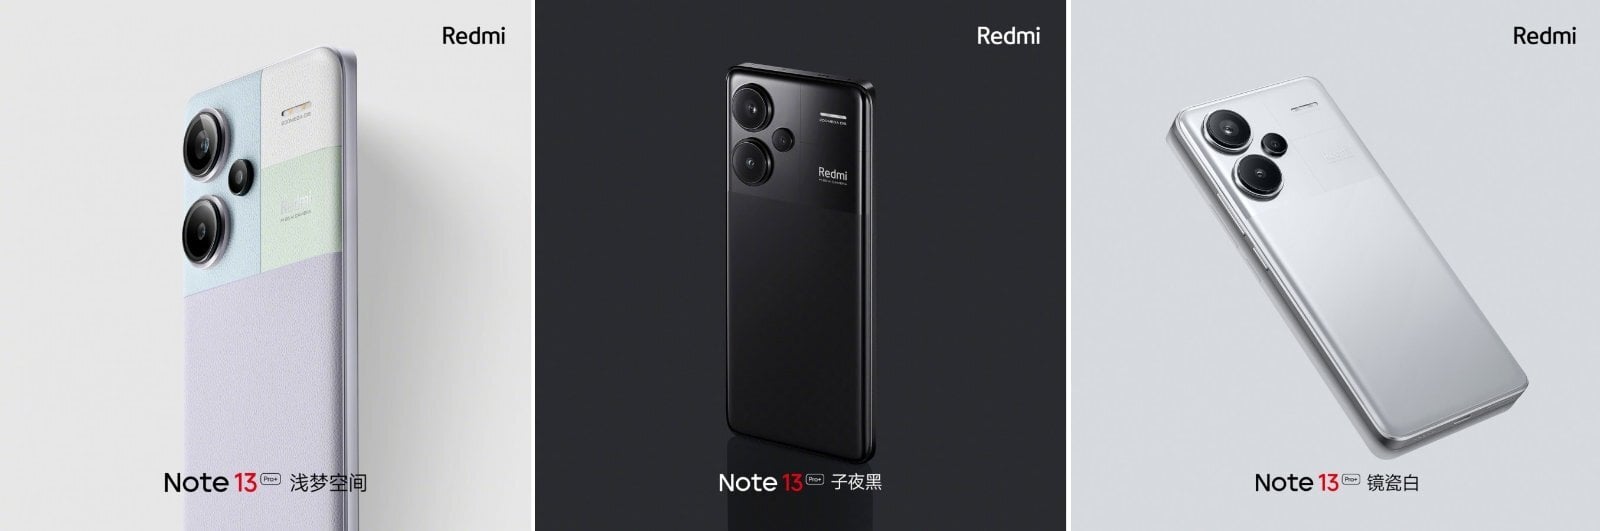 Redmi Note 13 Pro+_123.jpg